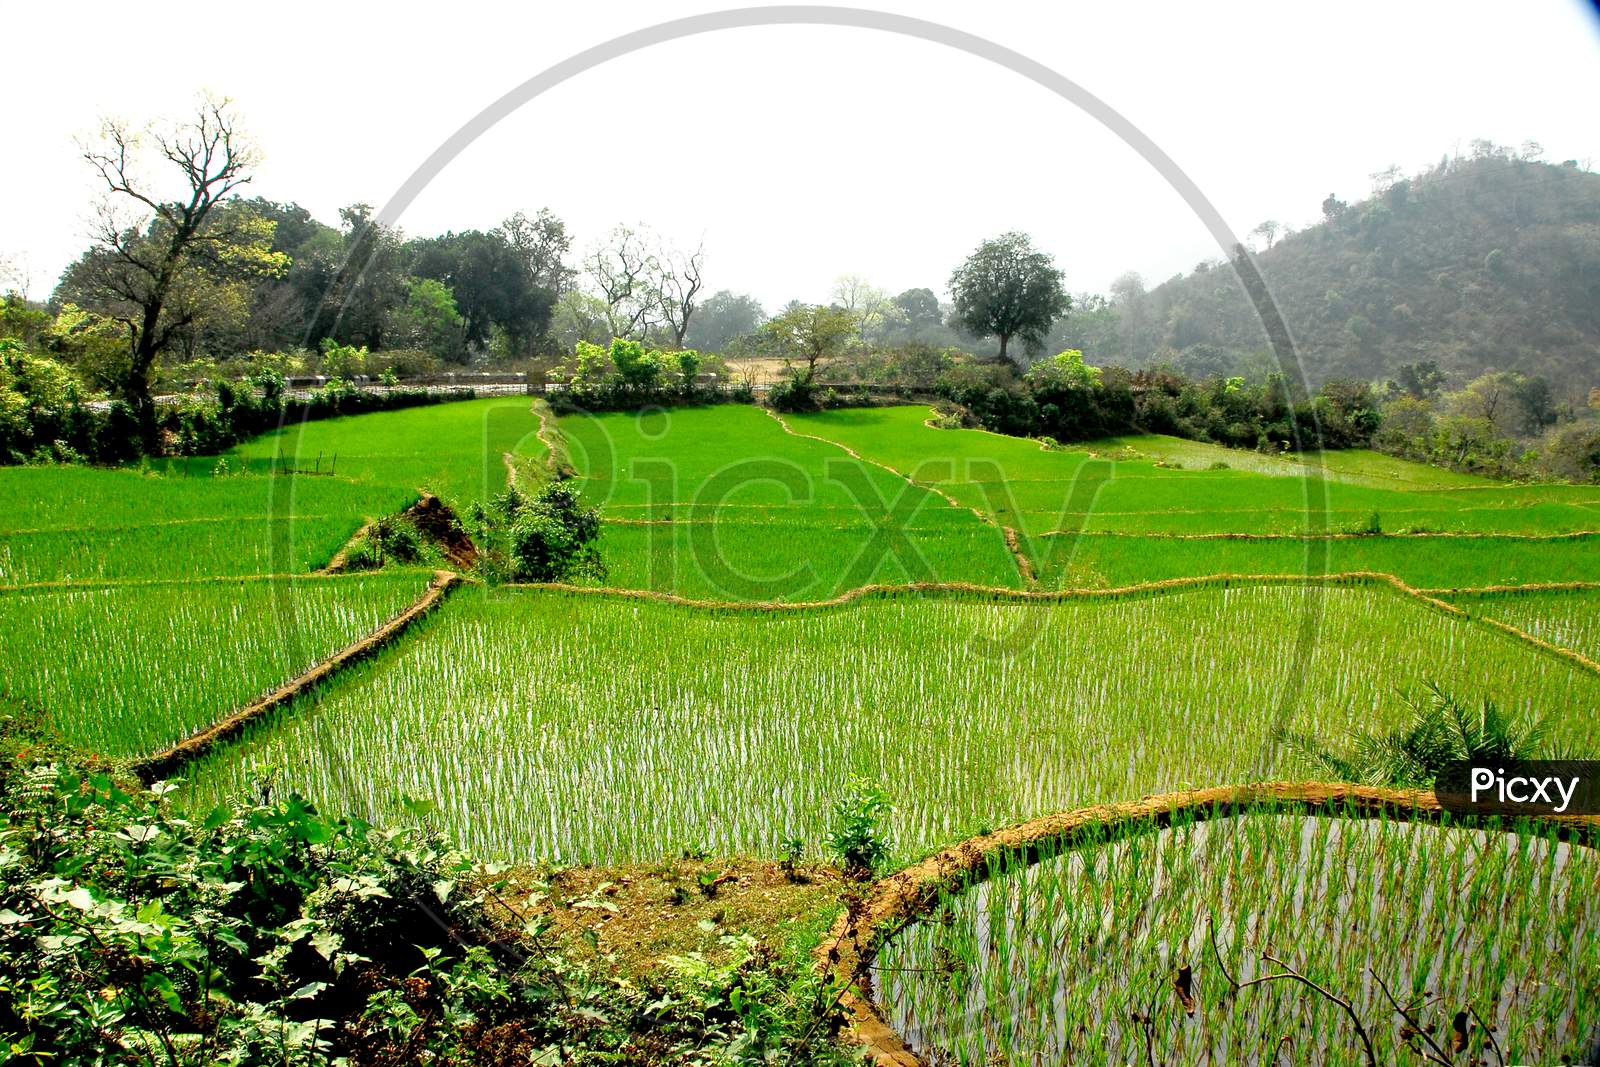 Stepwise Cultivation of Paddy Fields in Terrain Lands of Araku